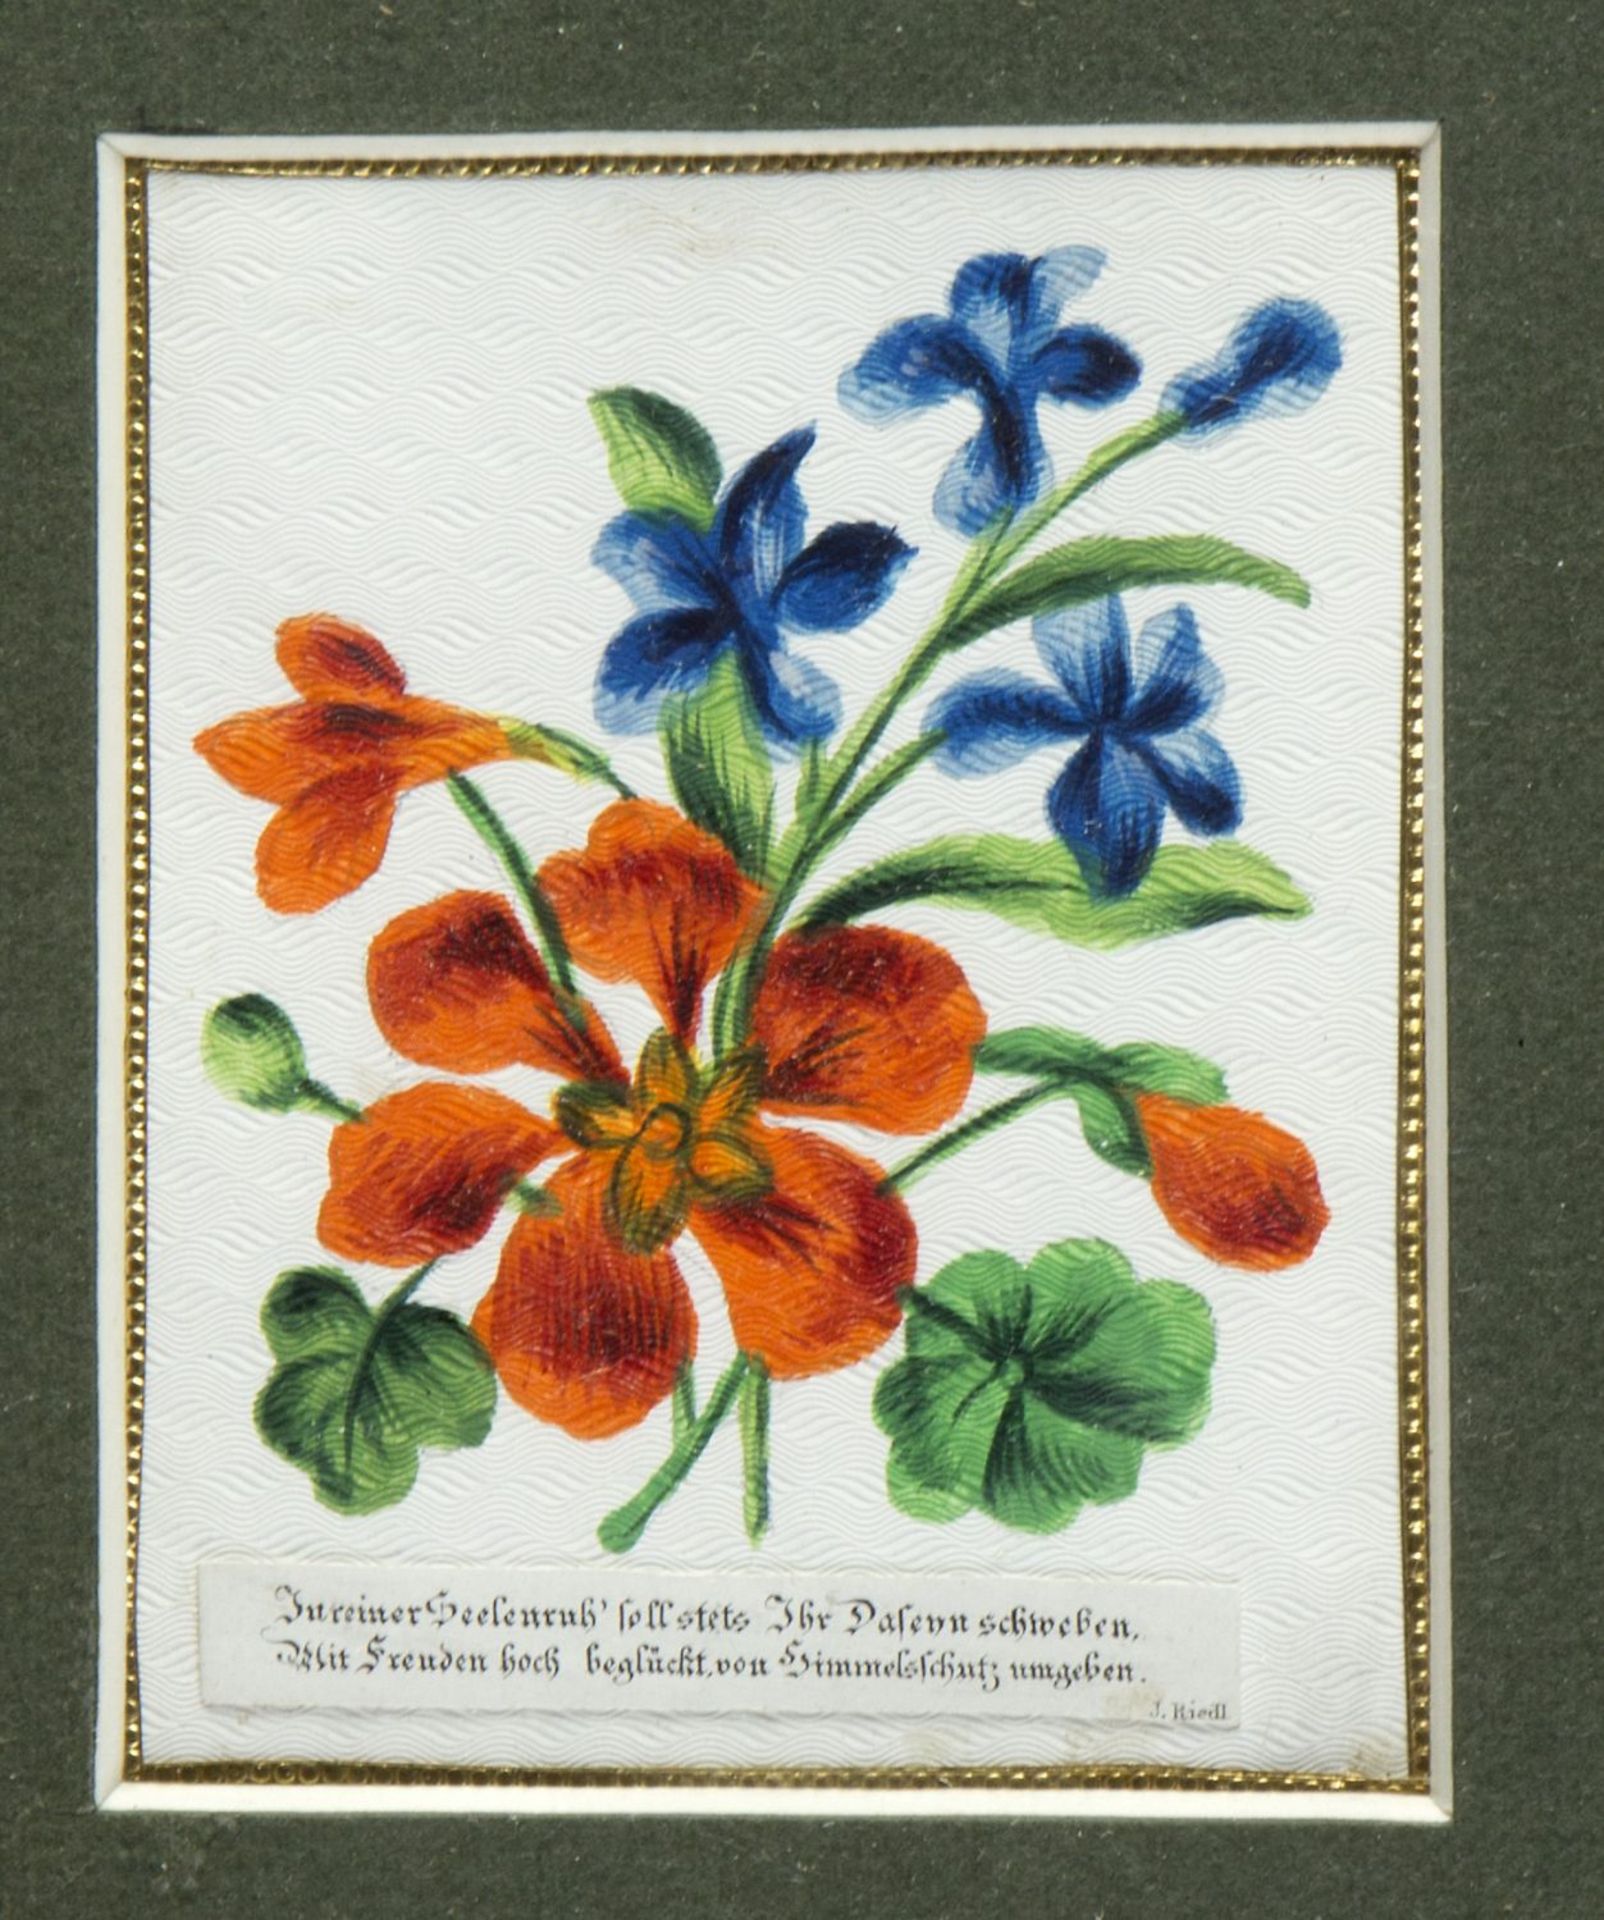 Dekorative Graphik Pflanzen. Frauen im Bade. Poesiealbum u.a. 10 versch. Techn. Bis 20,5 x 15,5 cm. - Image 5 of 5